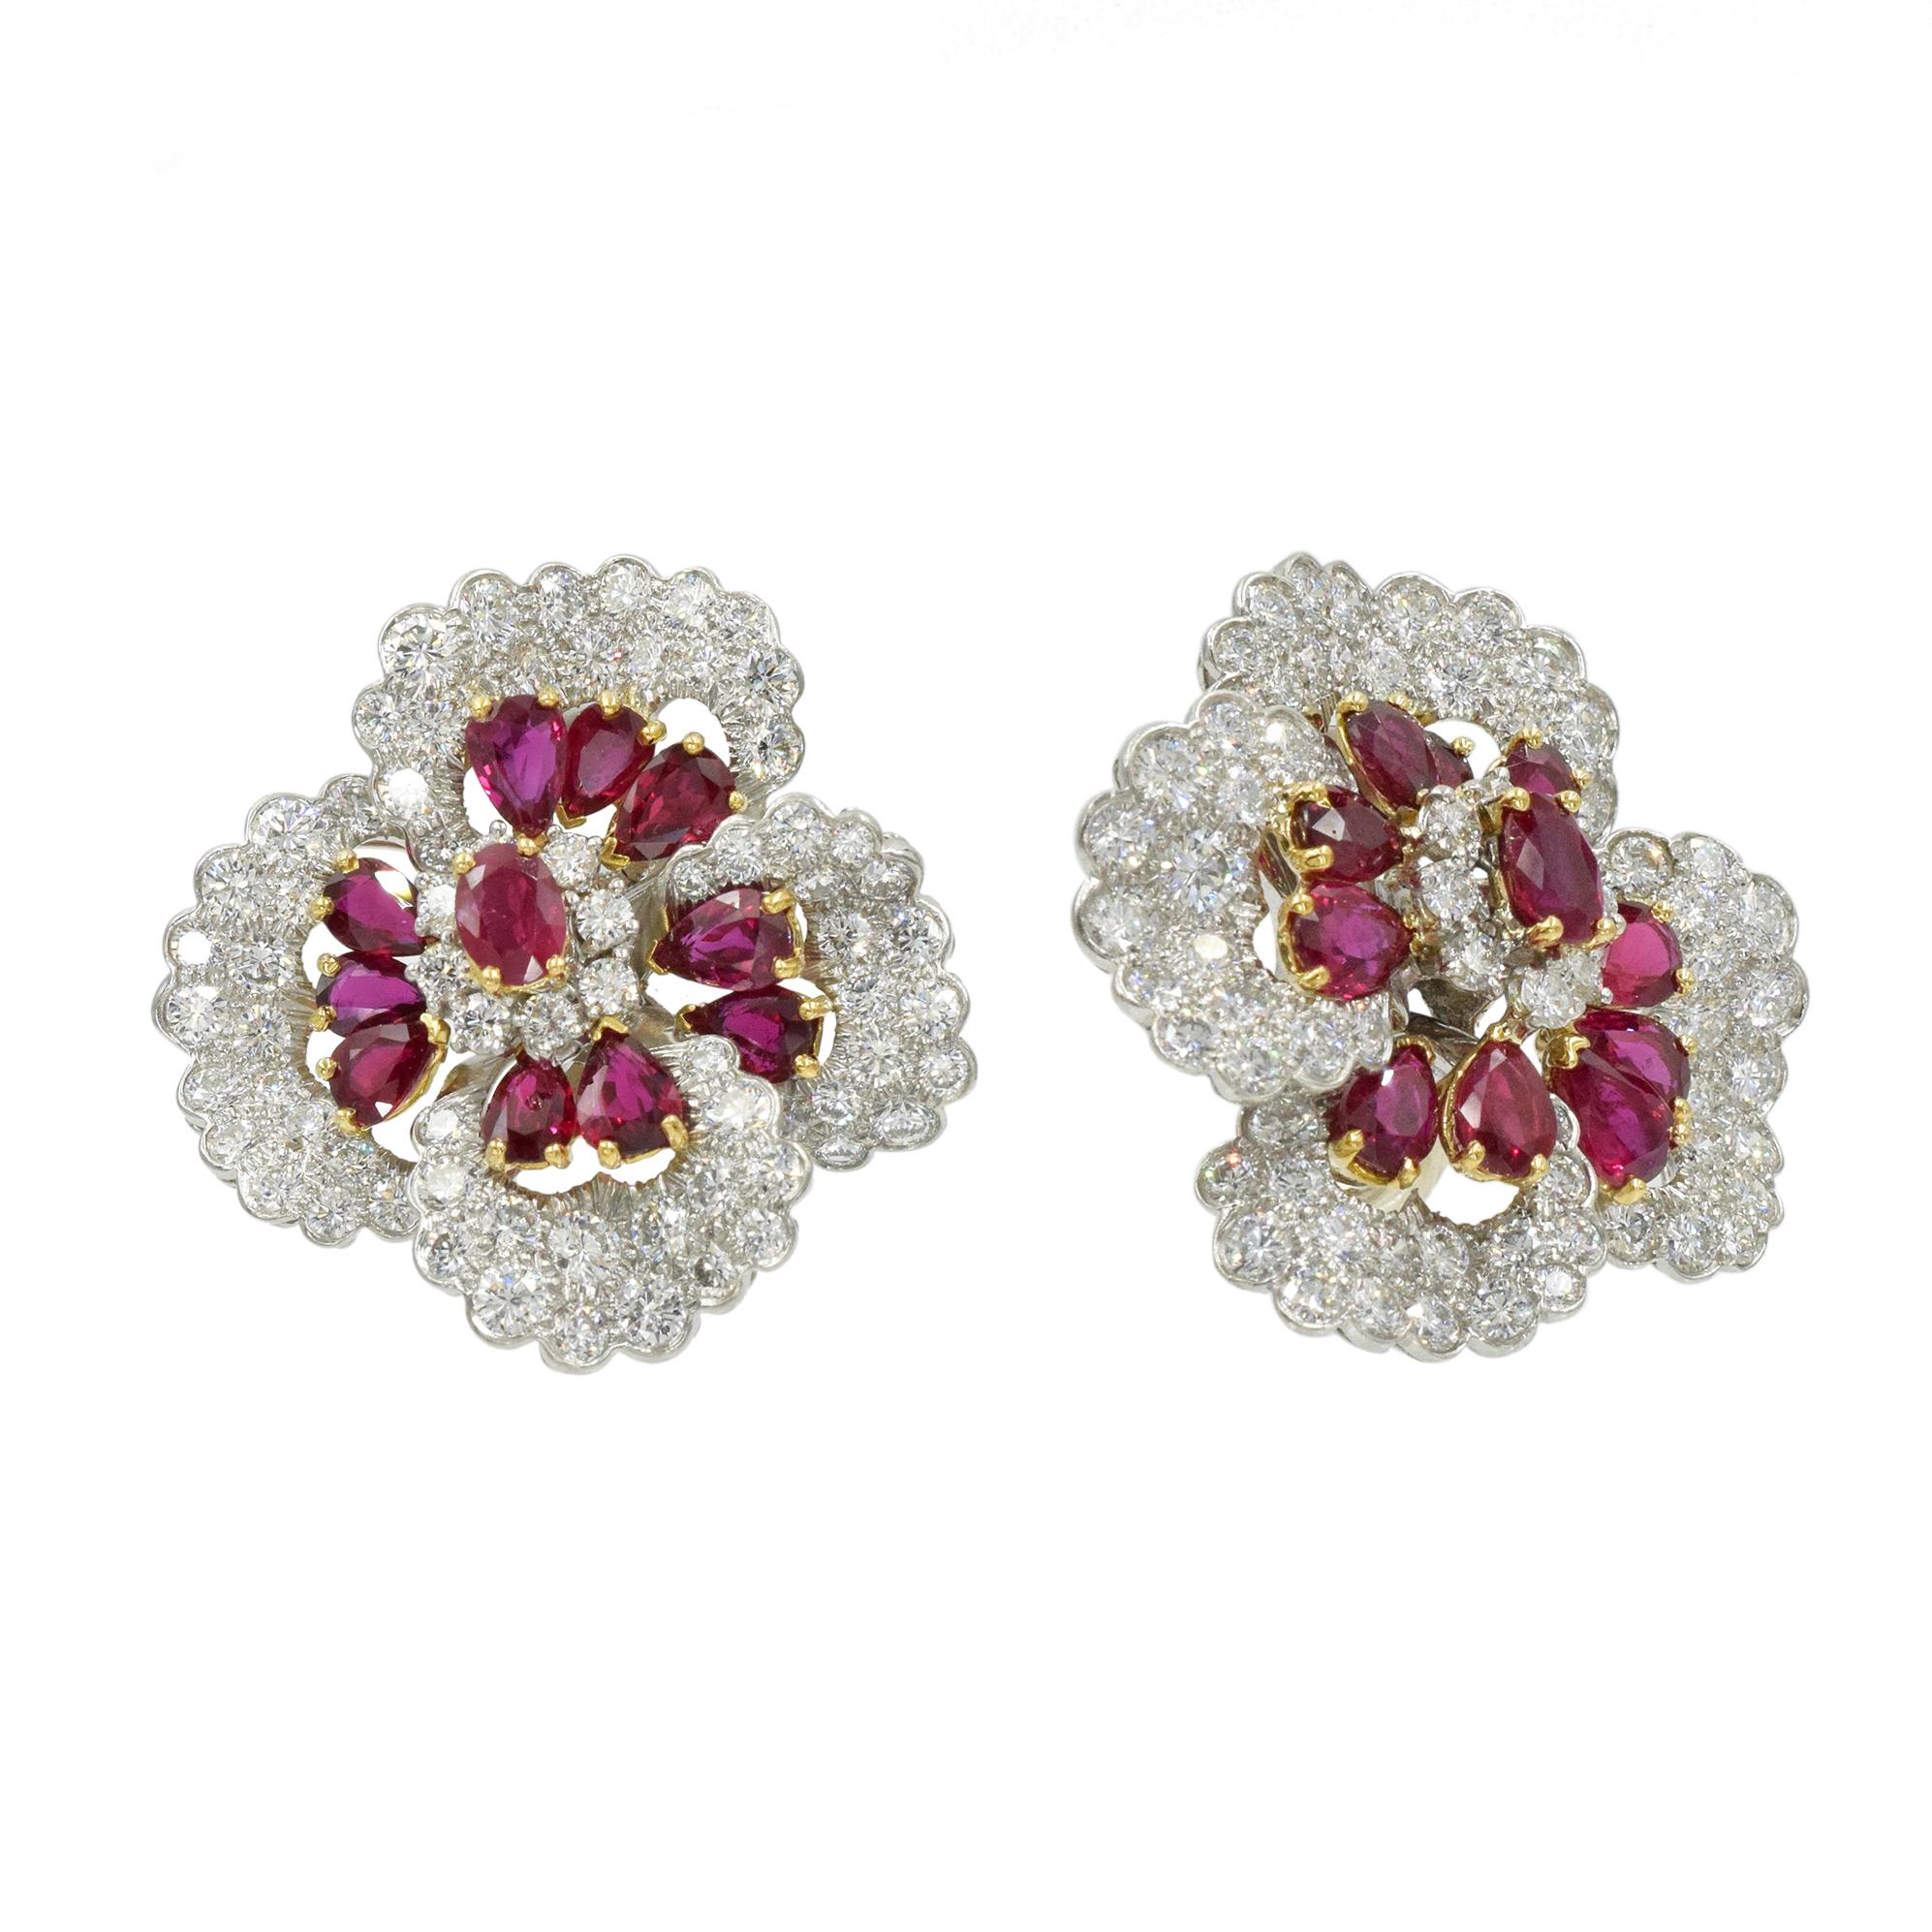 Oscar Heyman Diamond and Ruby Earrings For Sale 1